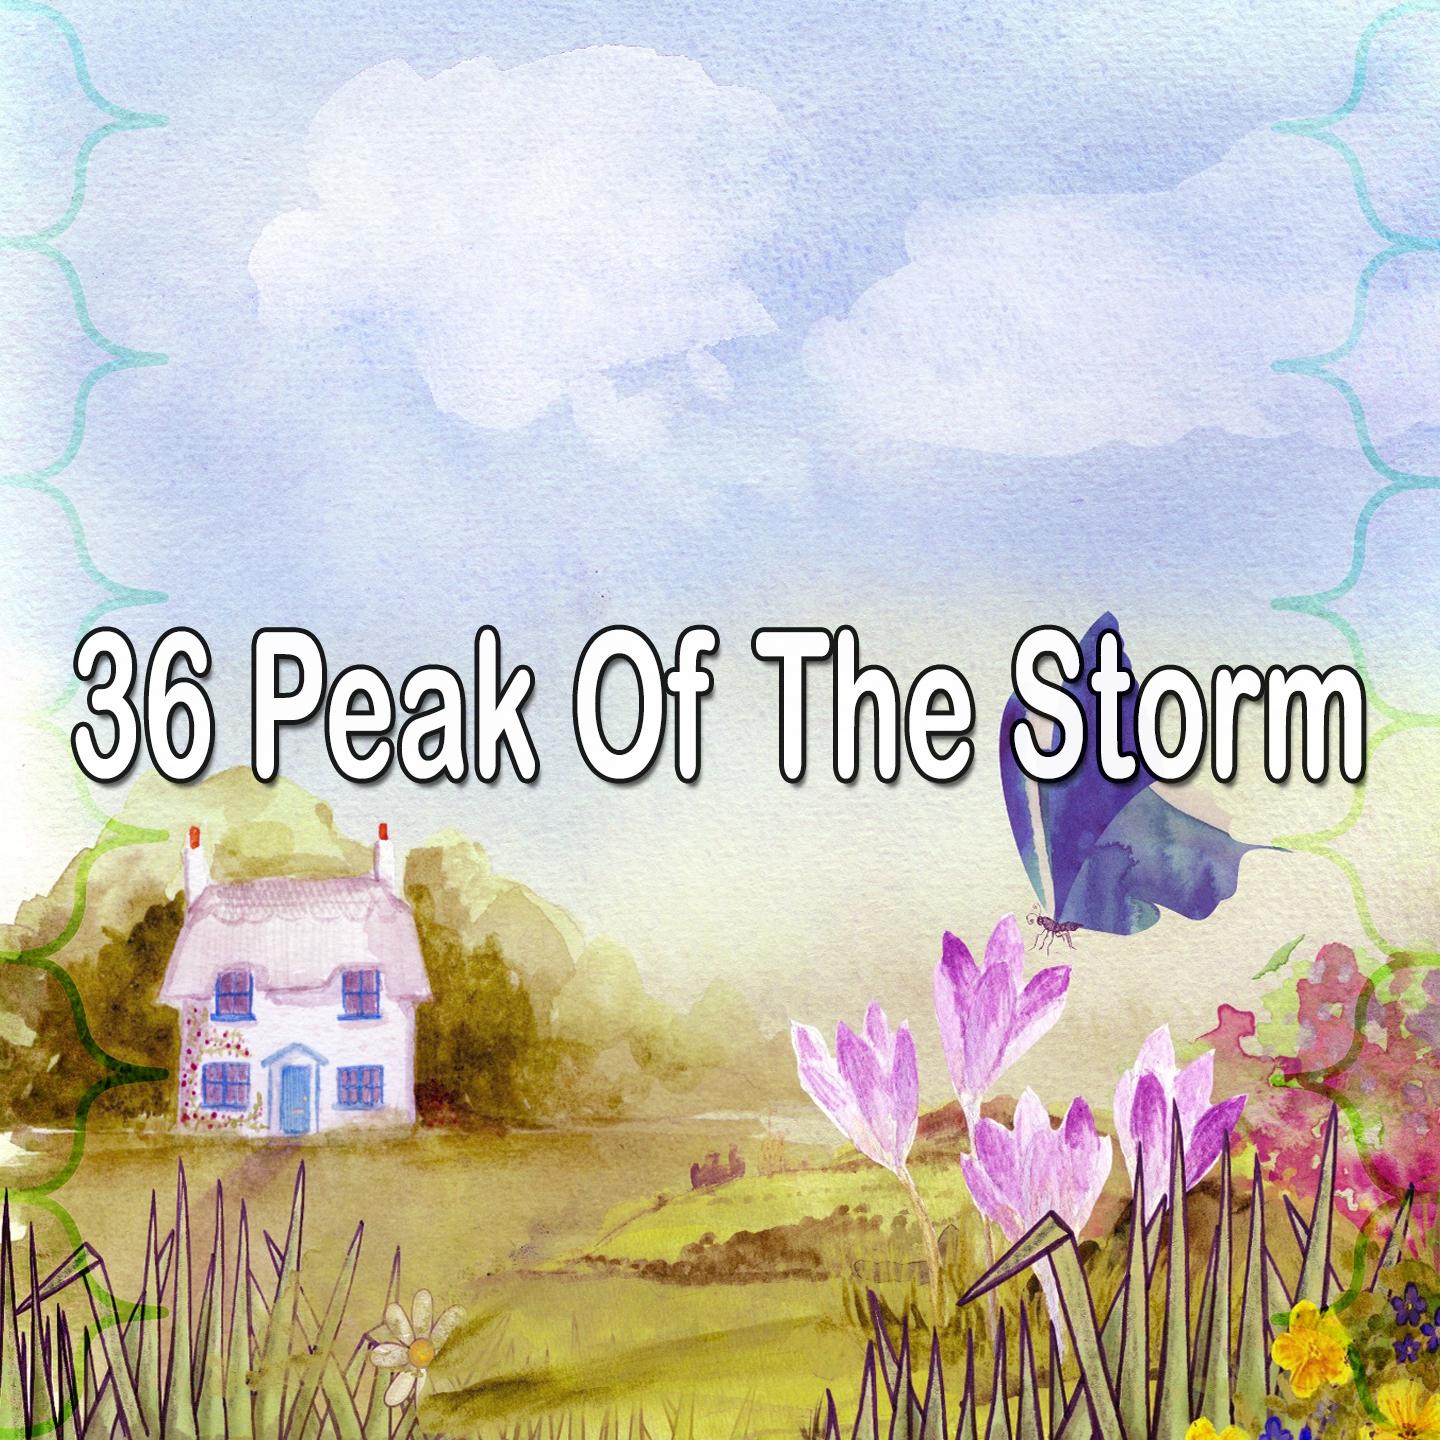 36 Peak of the Storm